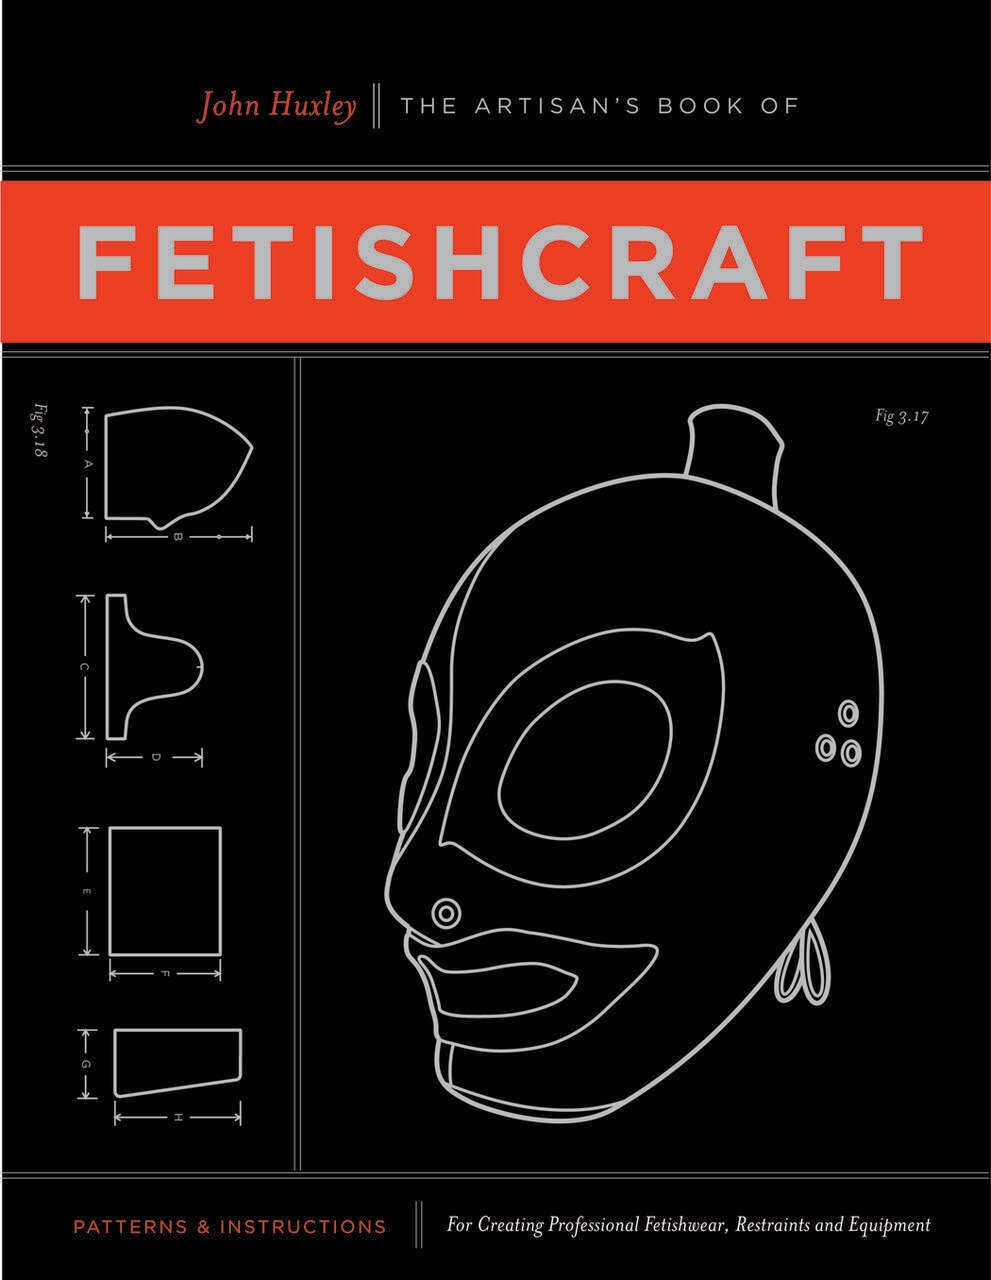 Artisan's Book of Fetishcraft